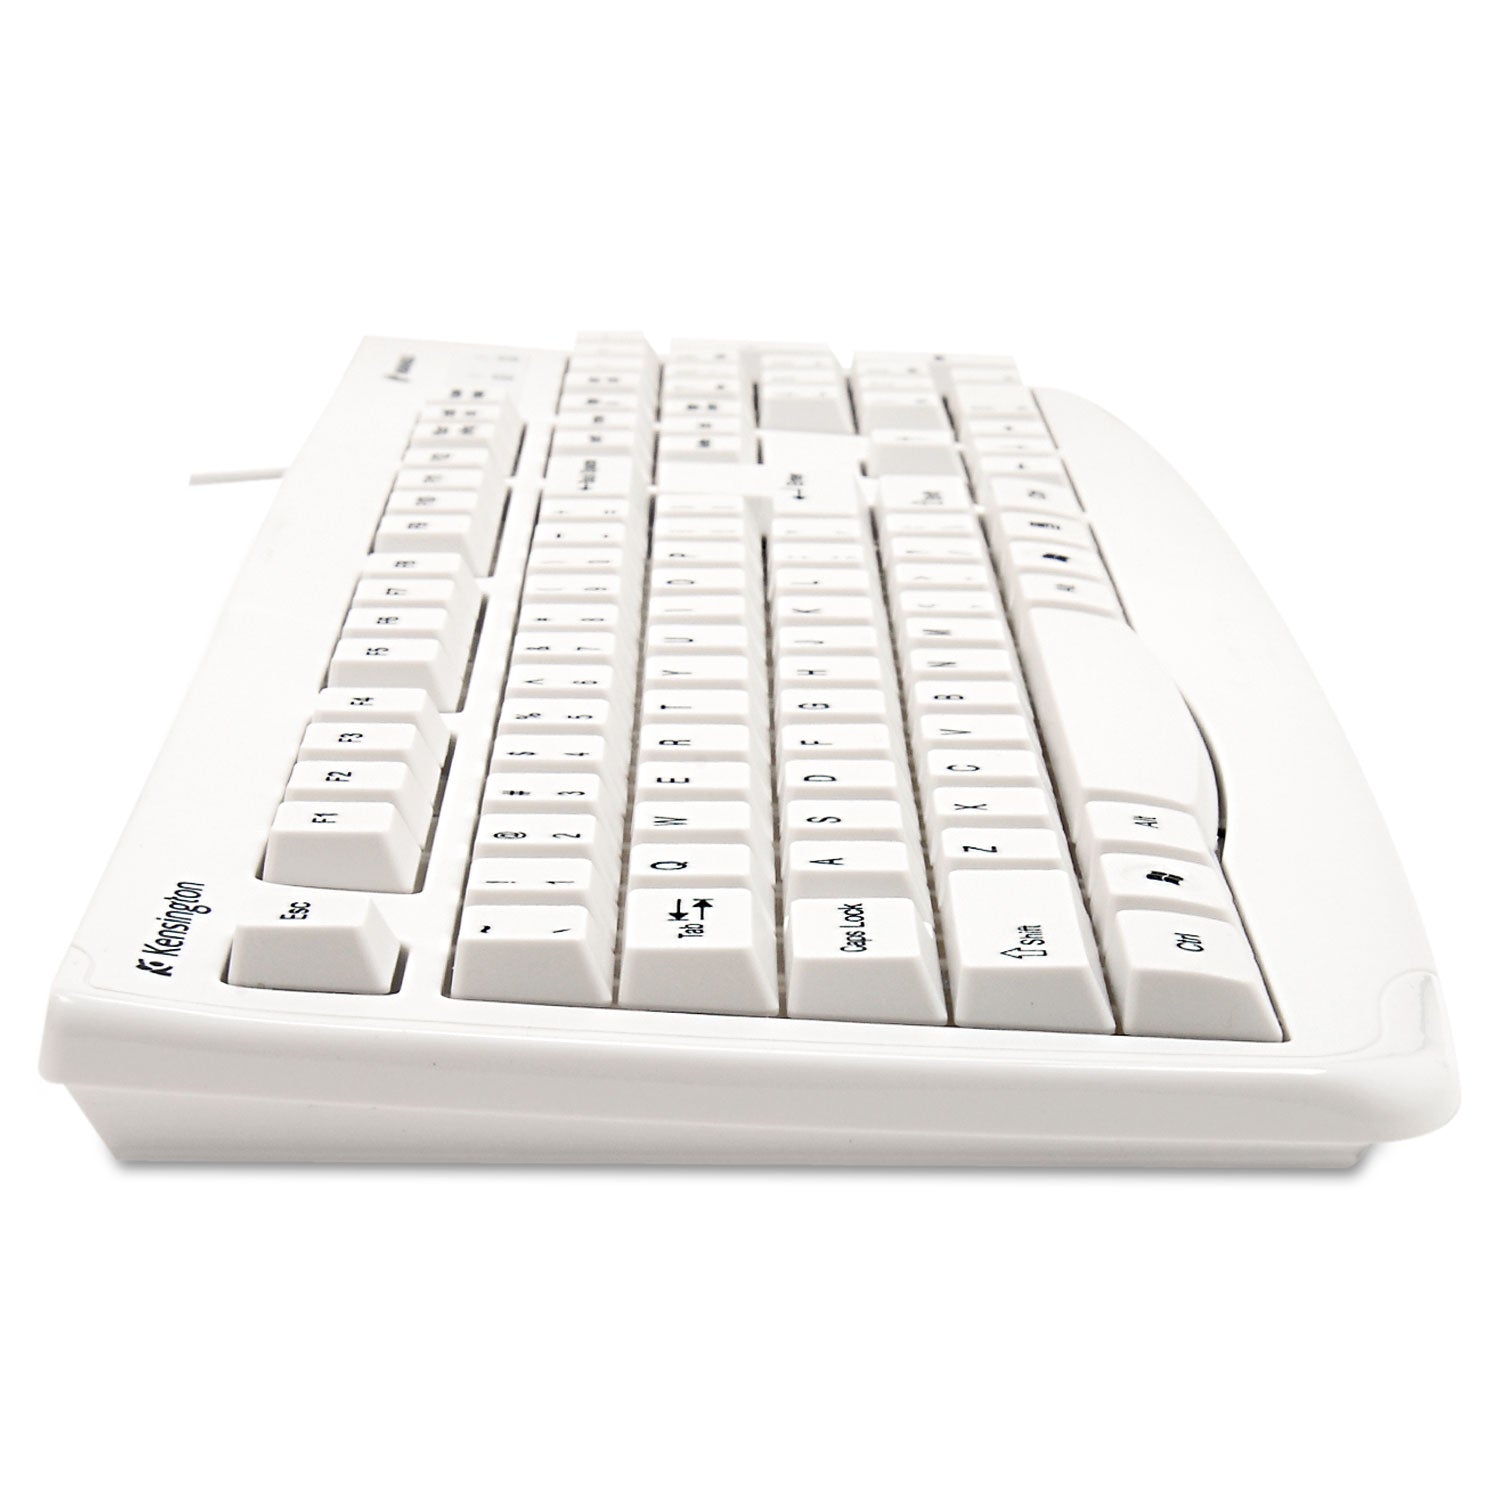 Pro Fit USB Washable Keyboard, 104 Keys, White - 